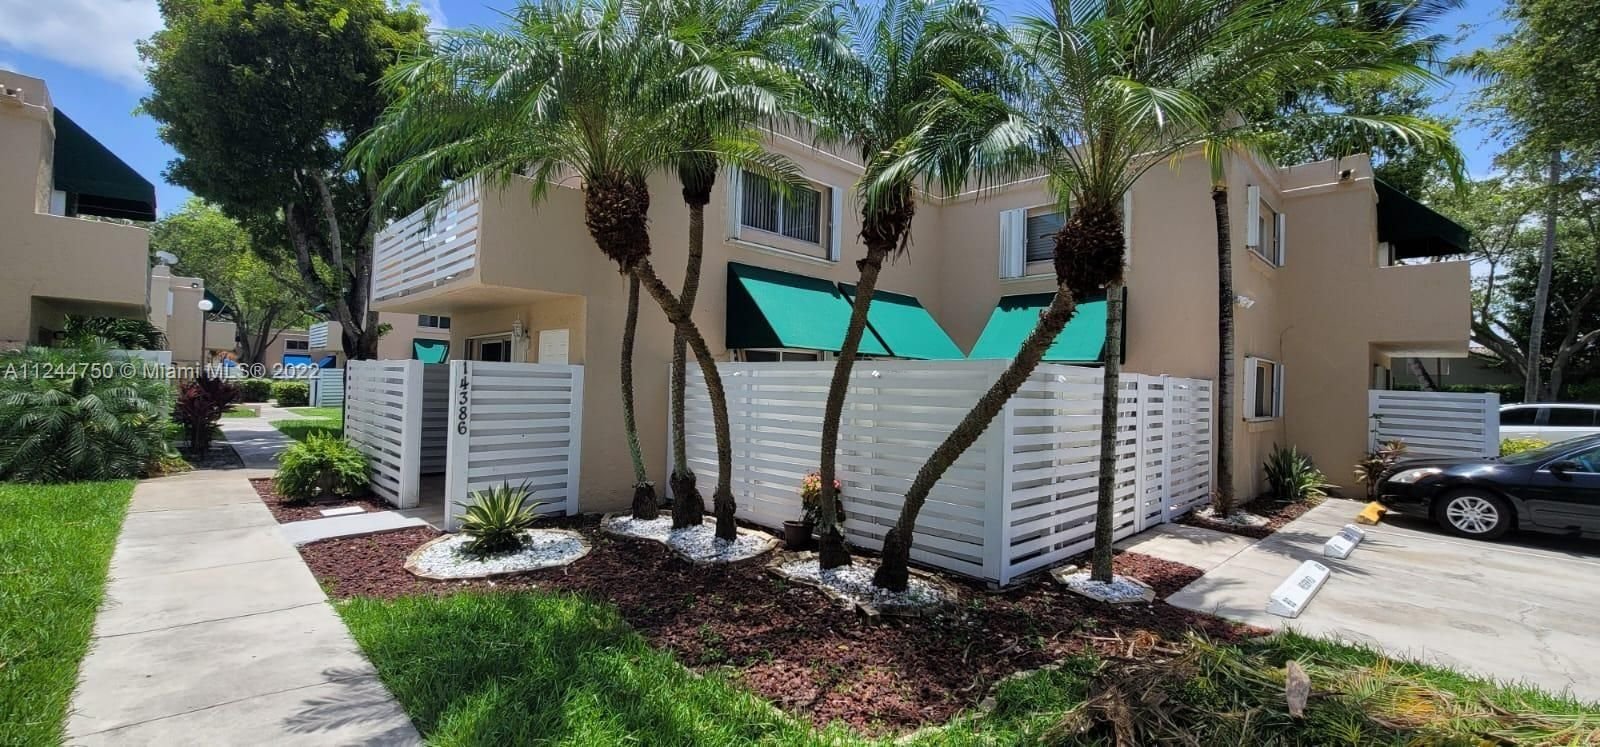 Real estate property located at 14386 97th Ln, Miami-Dade County, Miami, FL